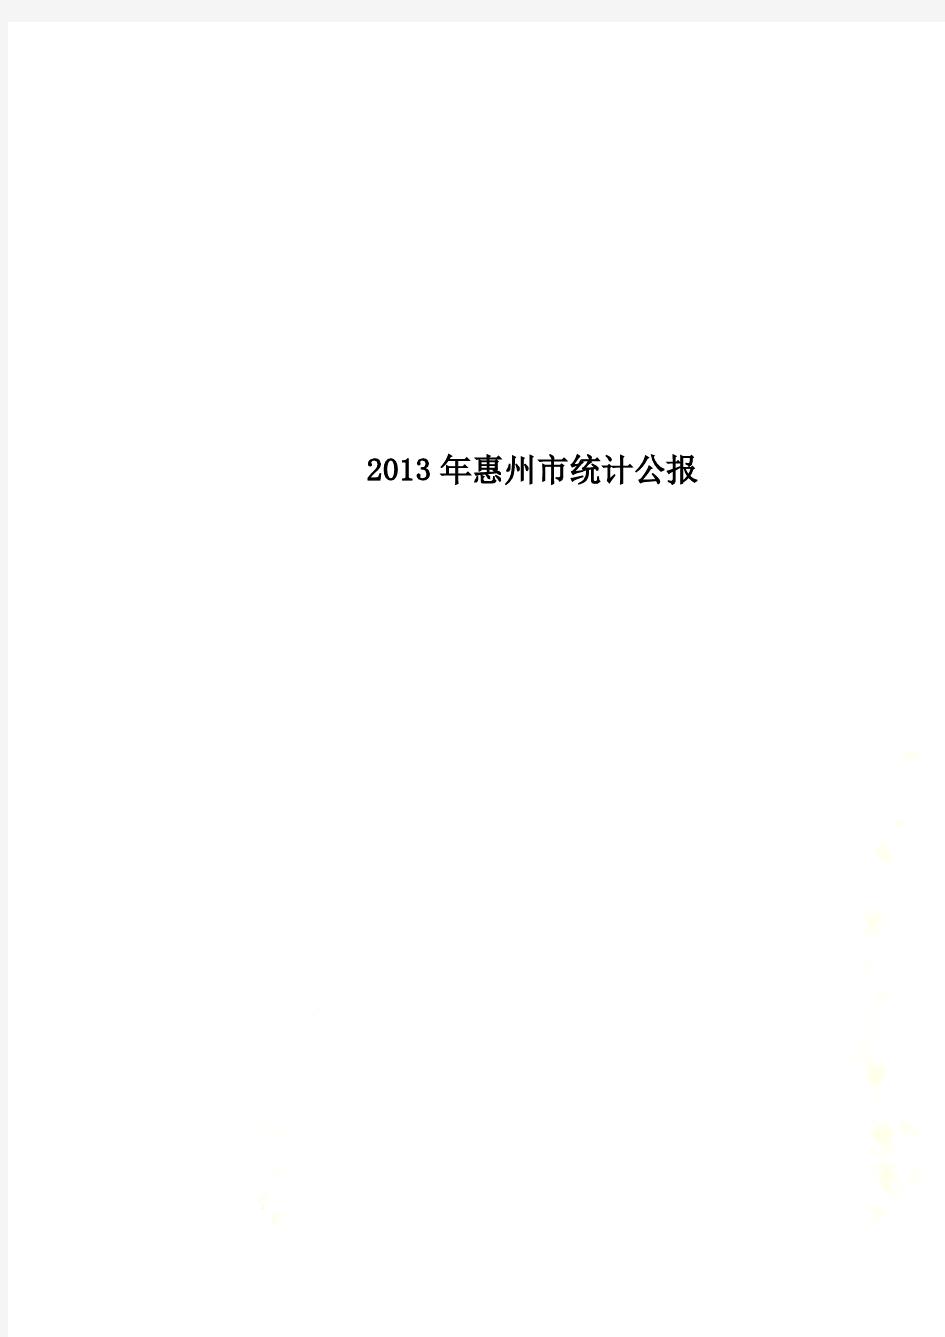 2013年惠州市统计公报